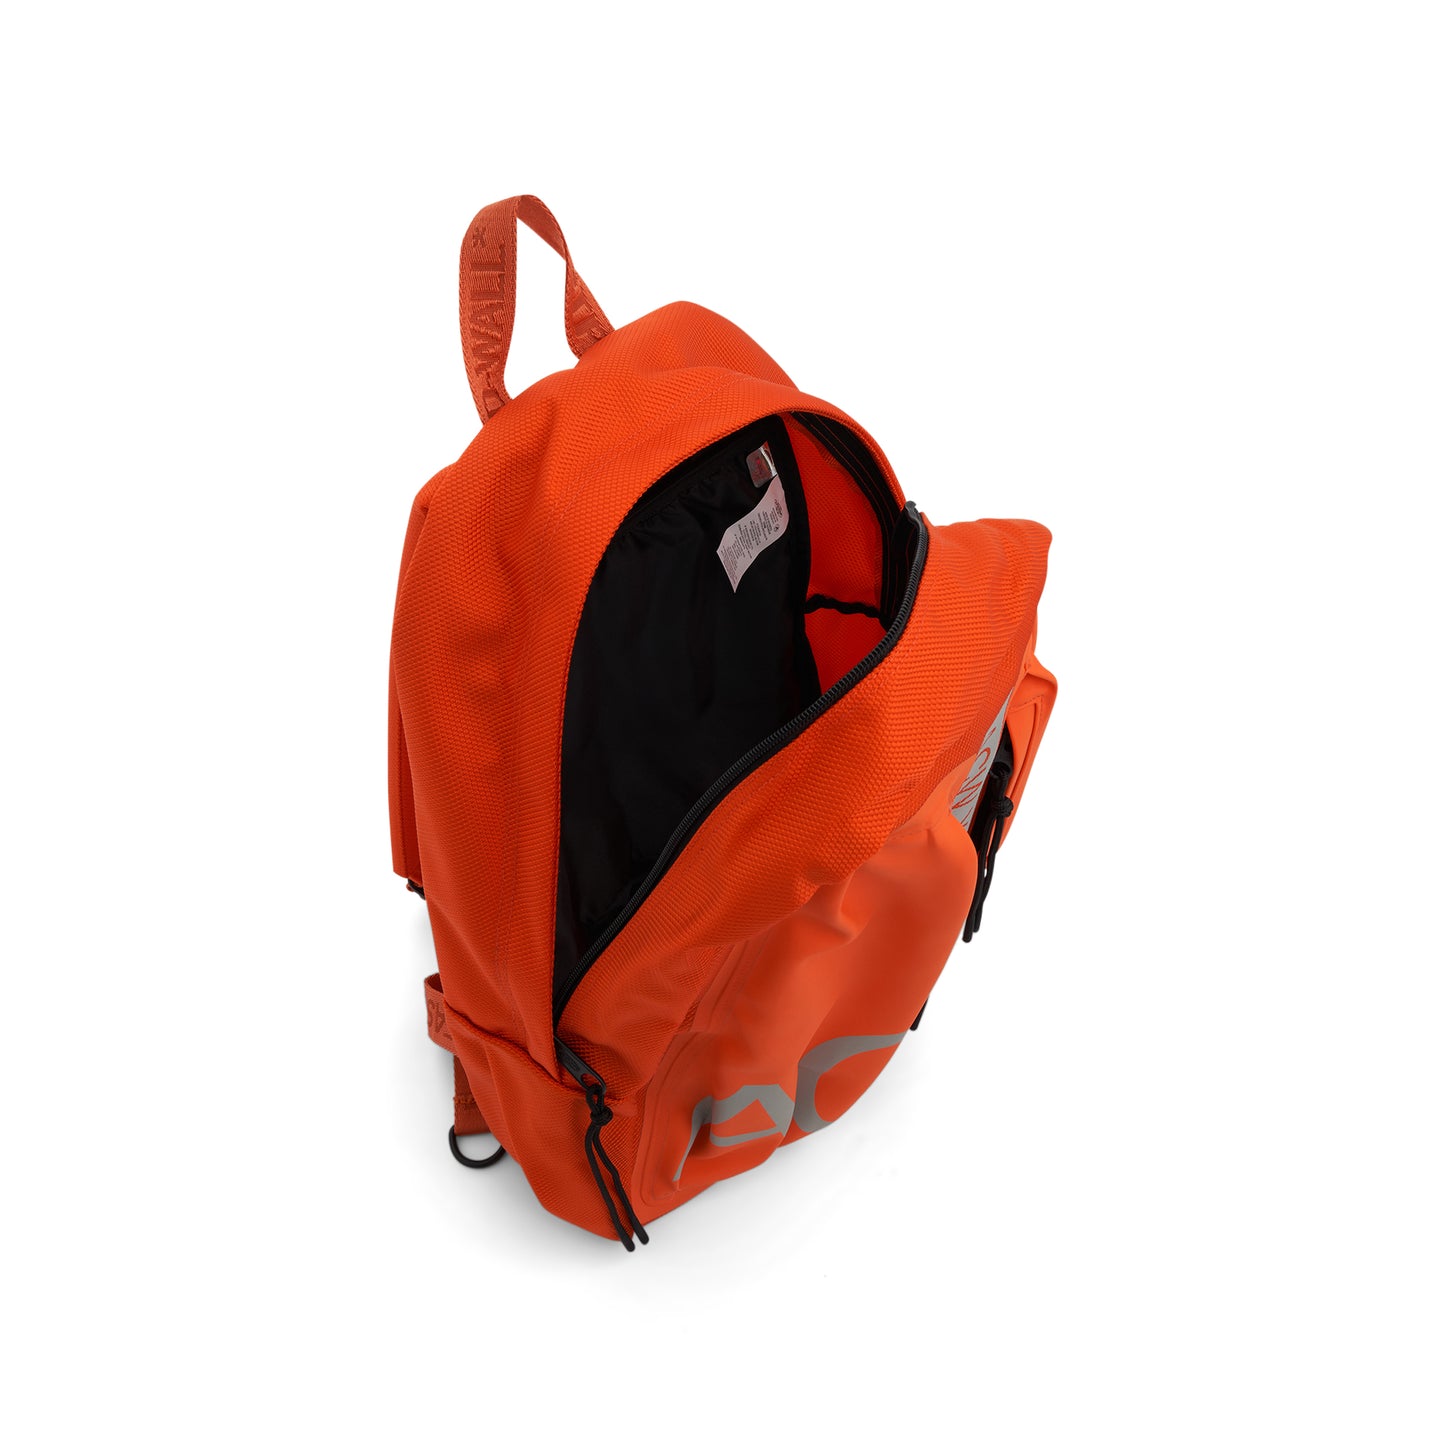 Eastpak Large Backpack in Rich Orange/Light Grey